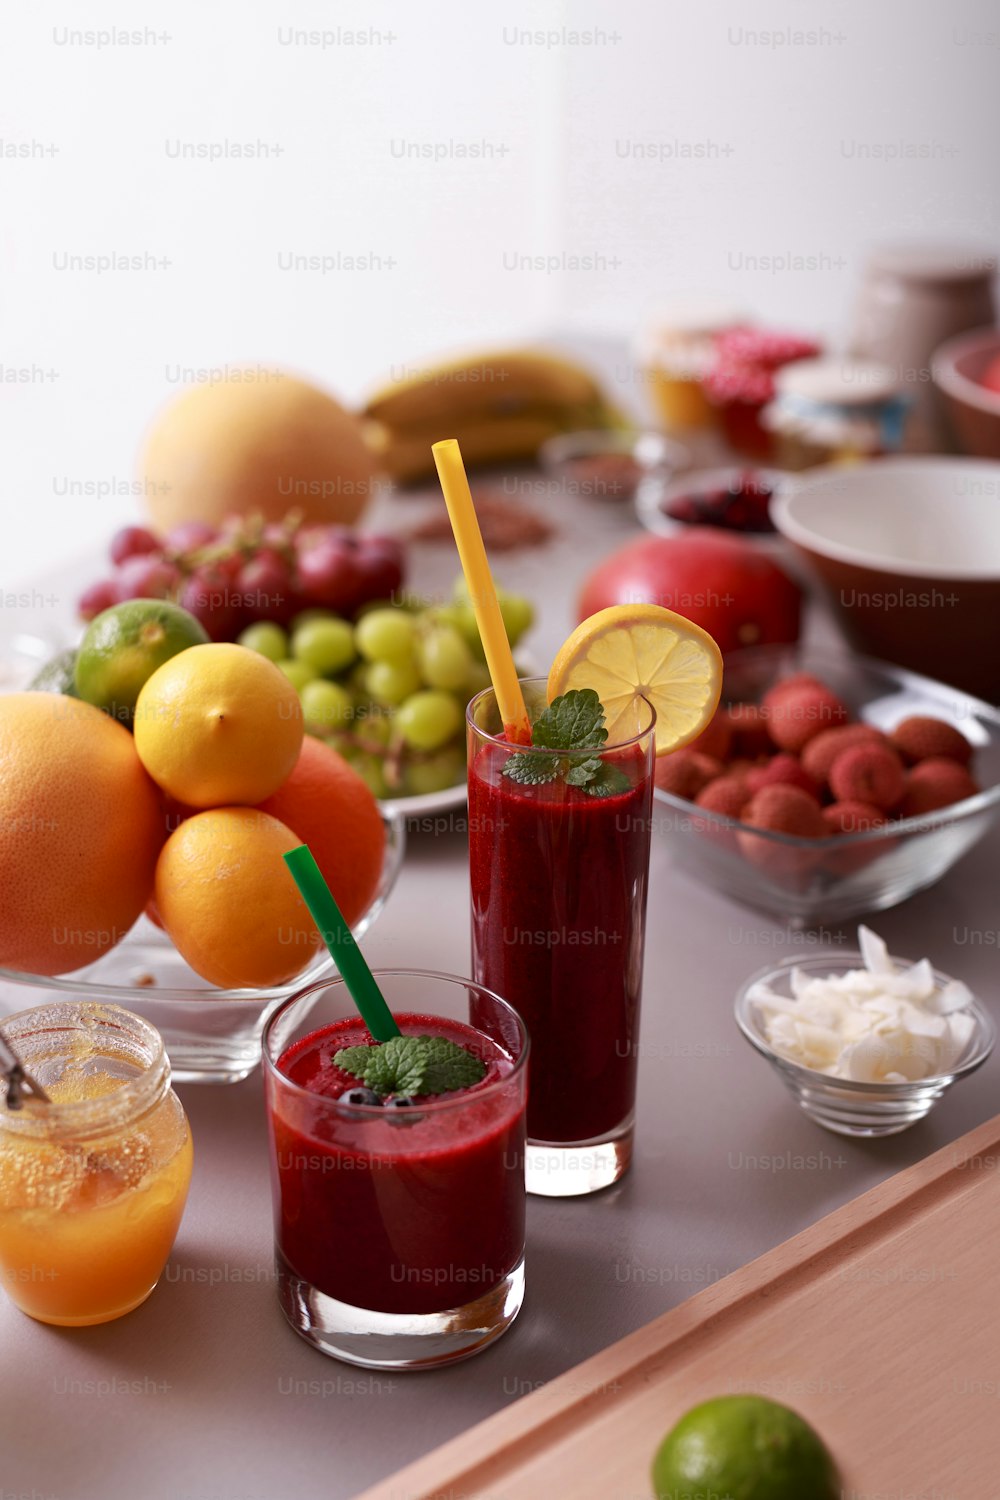 Un smoothie aux fruits frais fait maison, une boisson vitaminée saine et juteuse ou un concept d’alimentation végétalienne